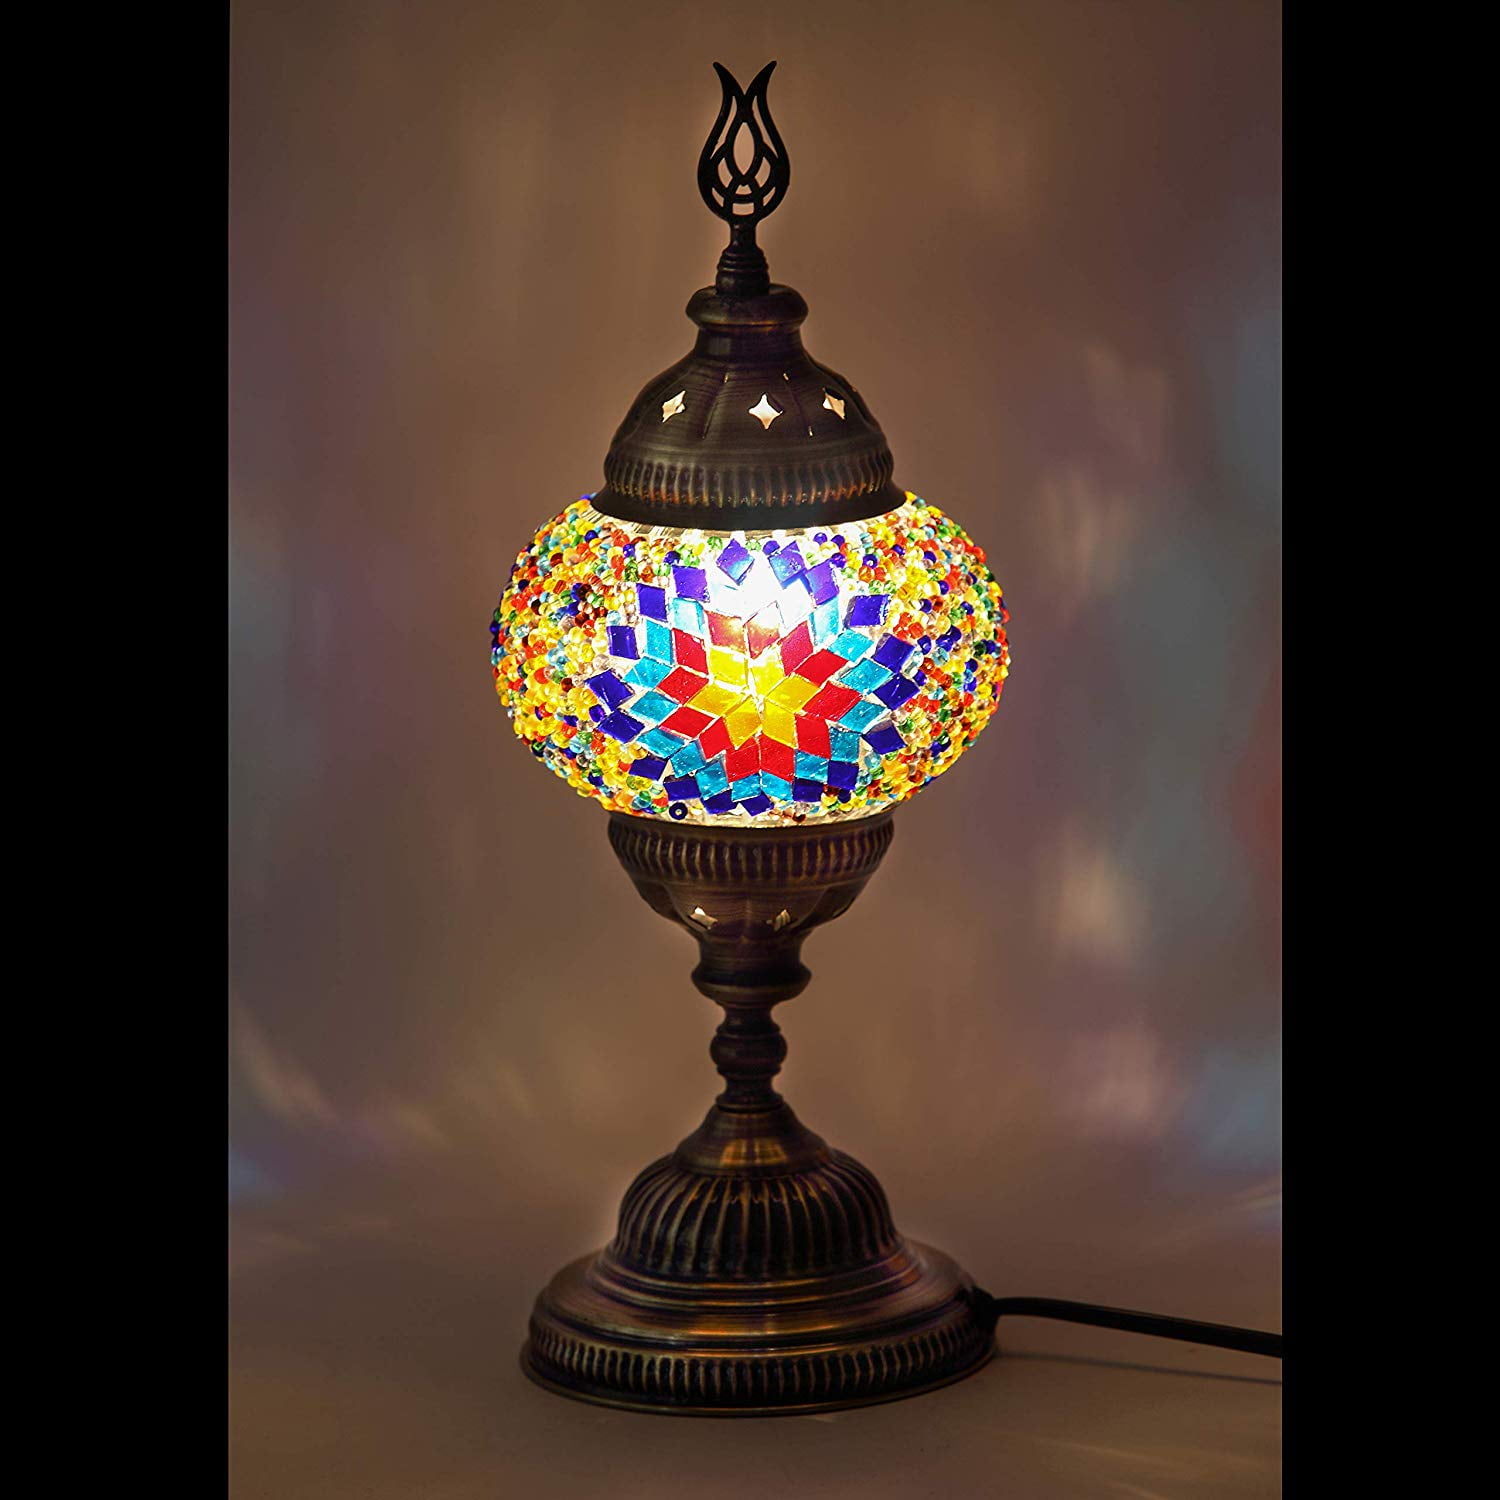 Lamodahome 31 Models Mosaic Lamp Handmade Turkish 4 5 Globes